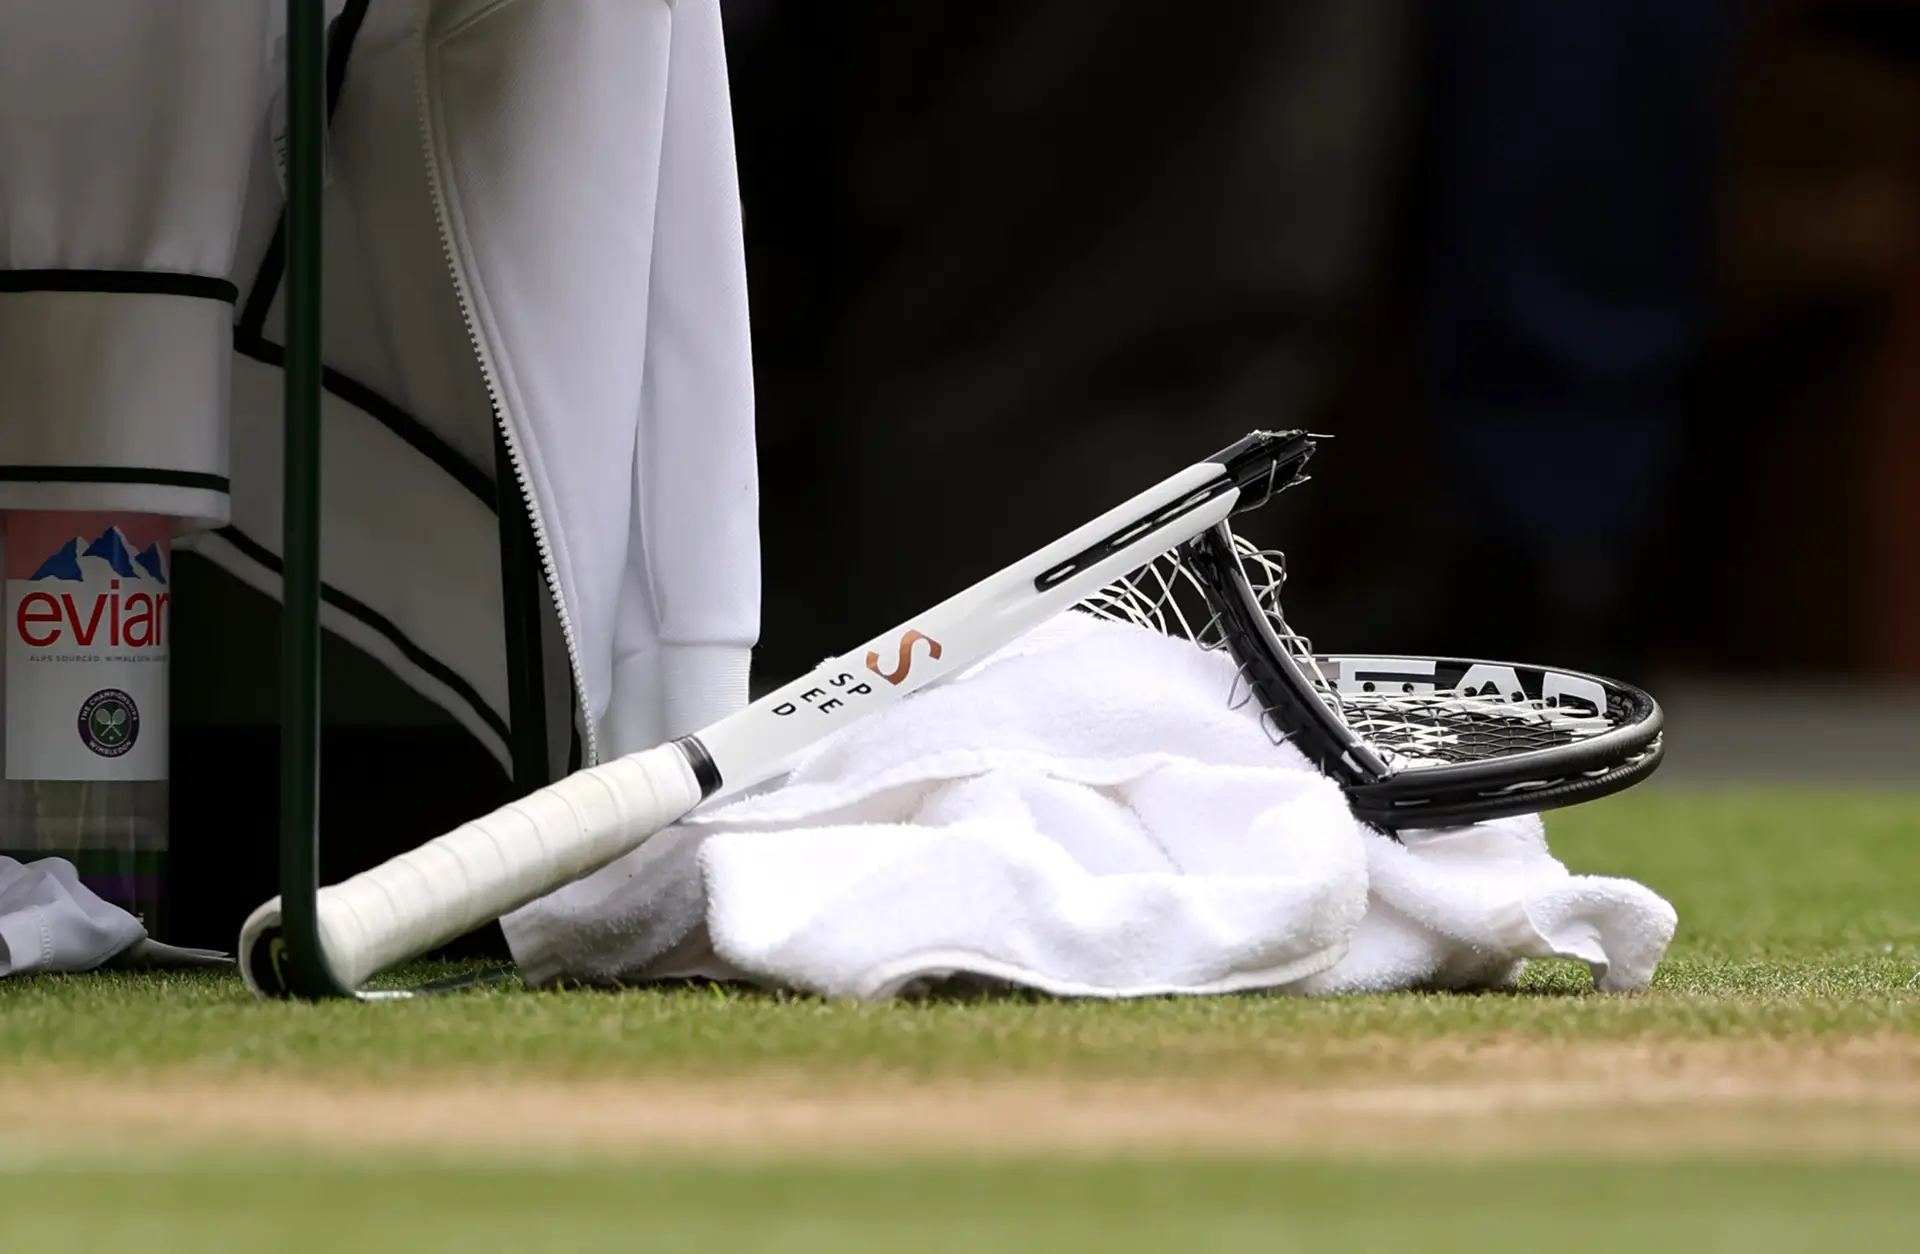 E Sinner, como tantos, sucumbiu à grandeza de Djokovic em Wimbledon